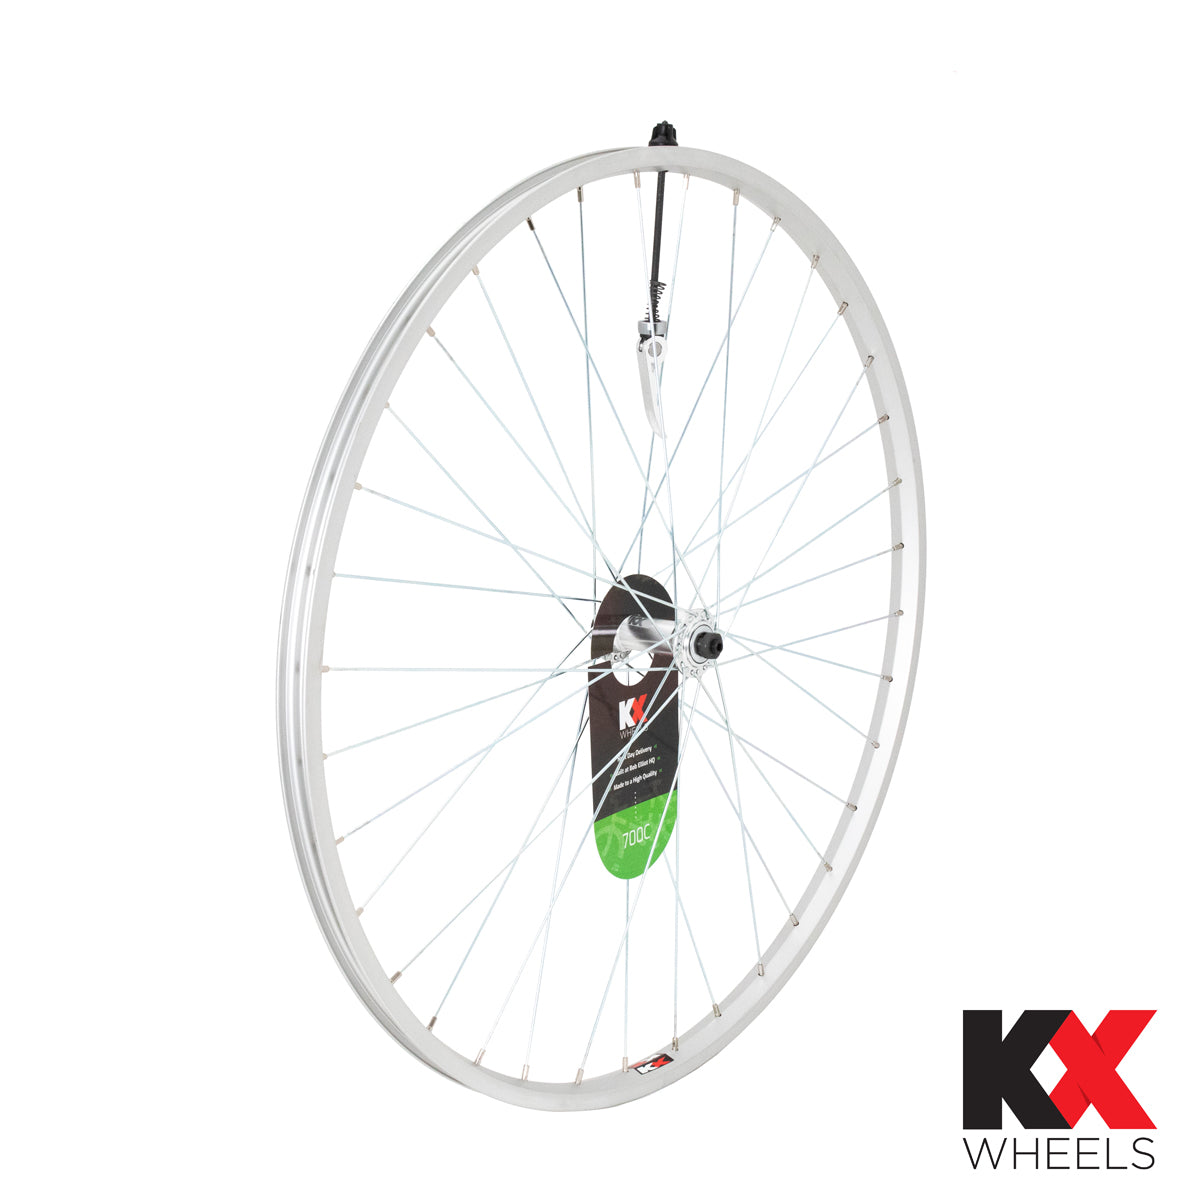 KX Wheels Single Wall QR 700c Front Bike Wheel Silver